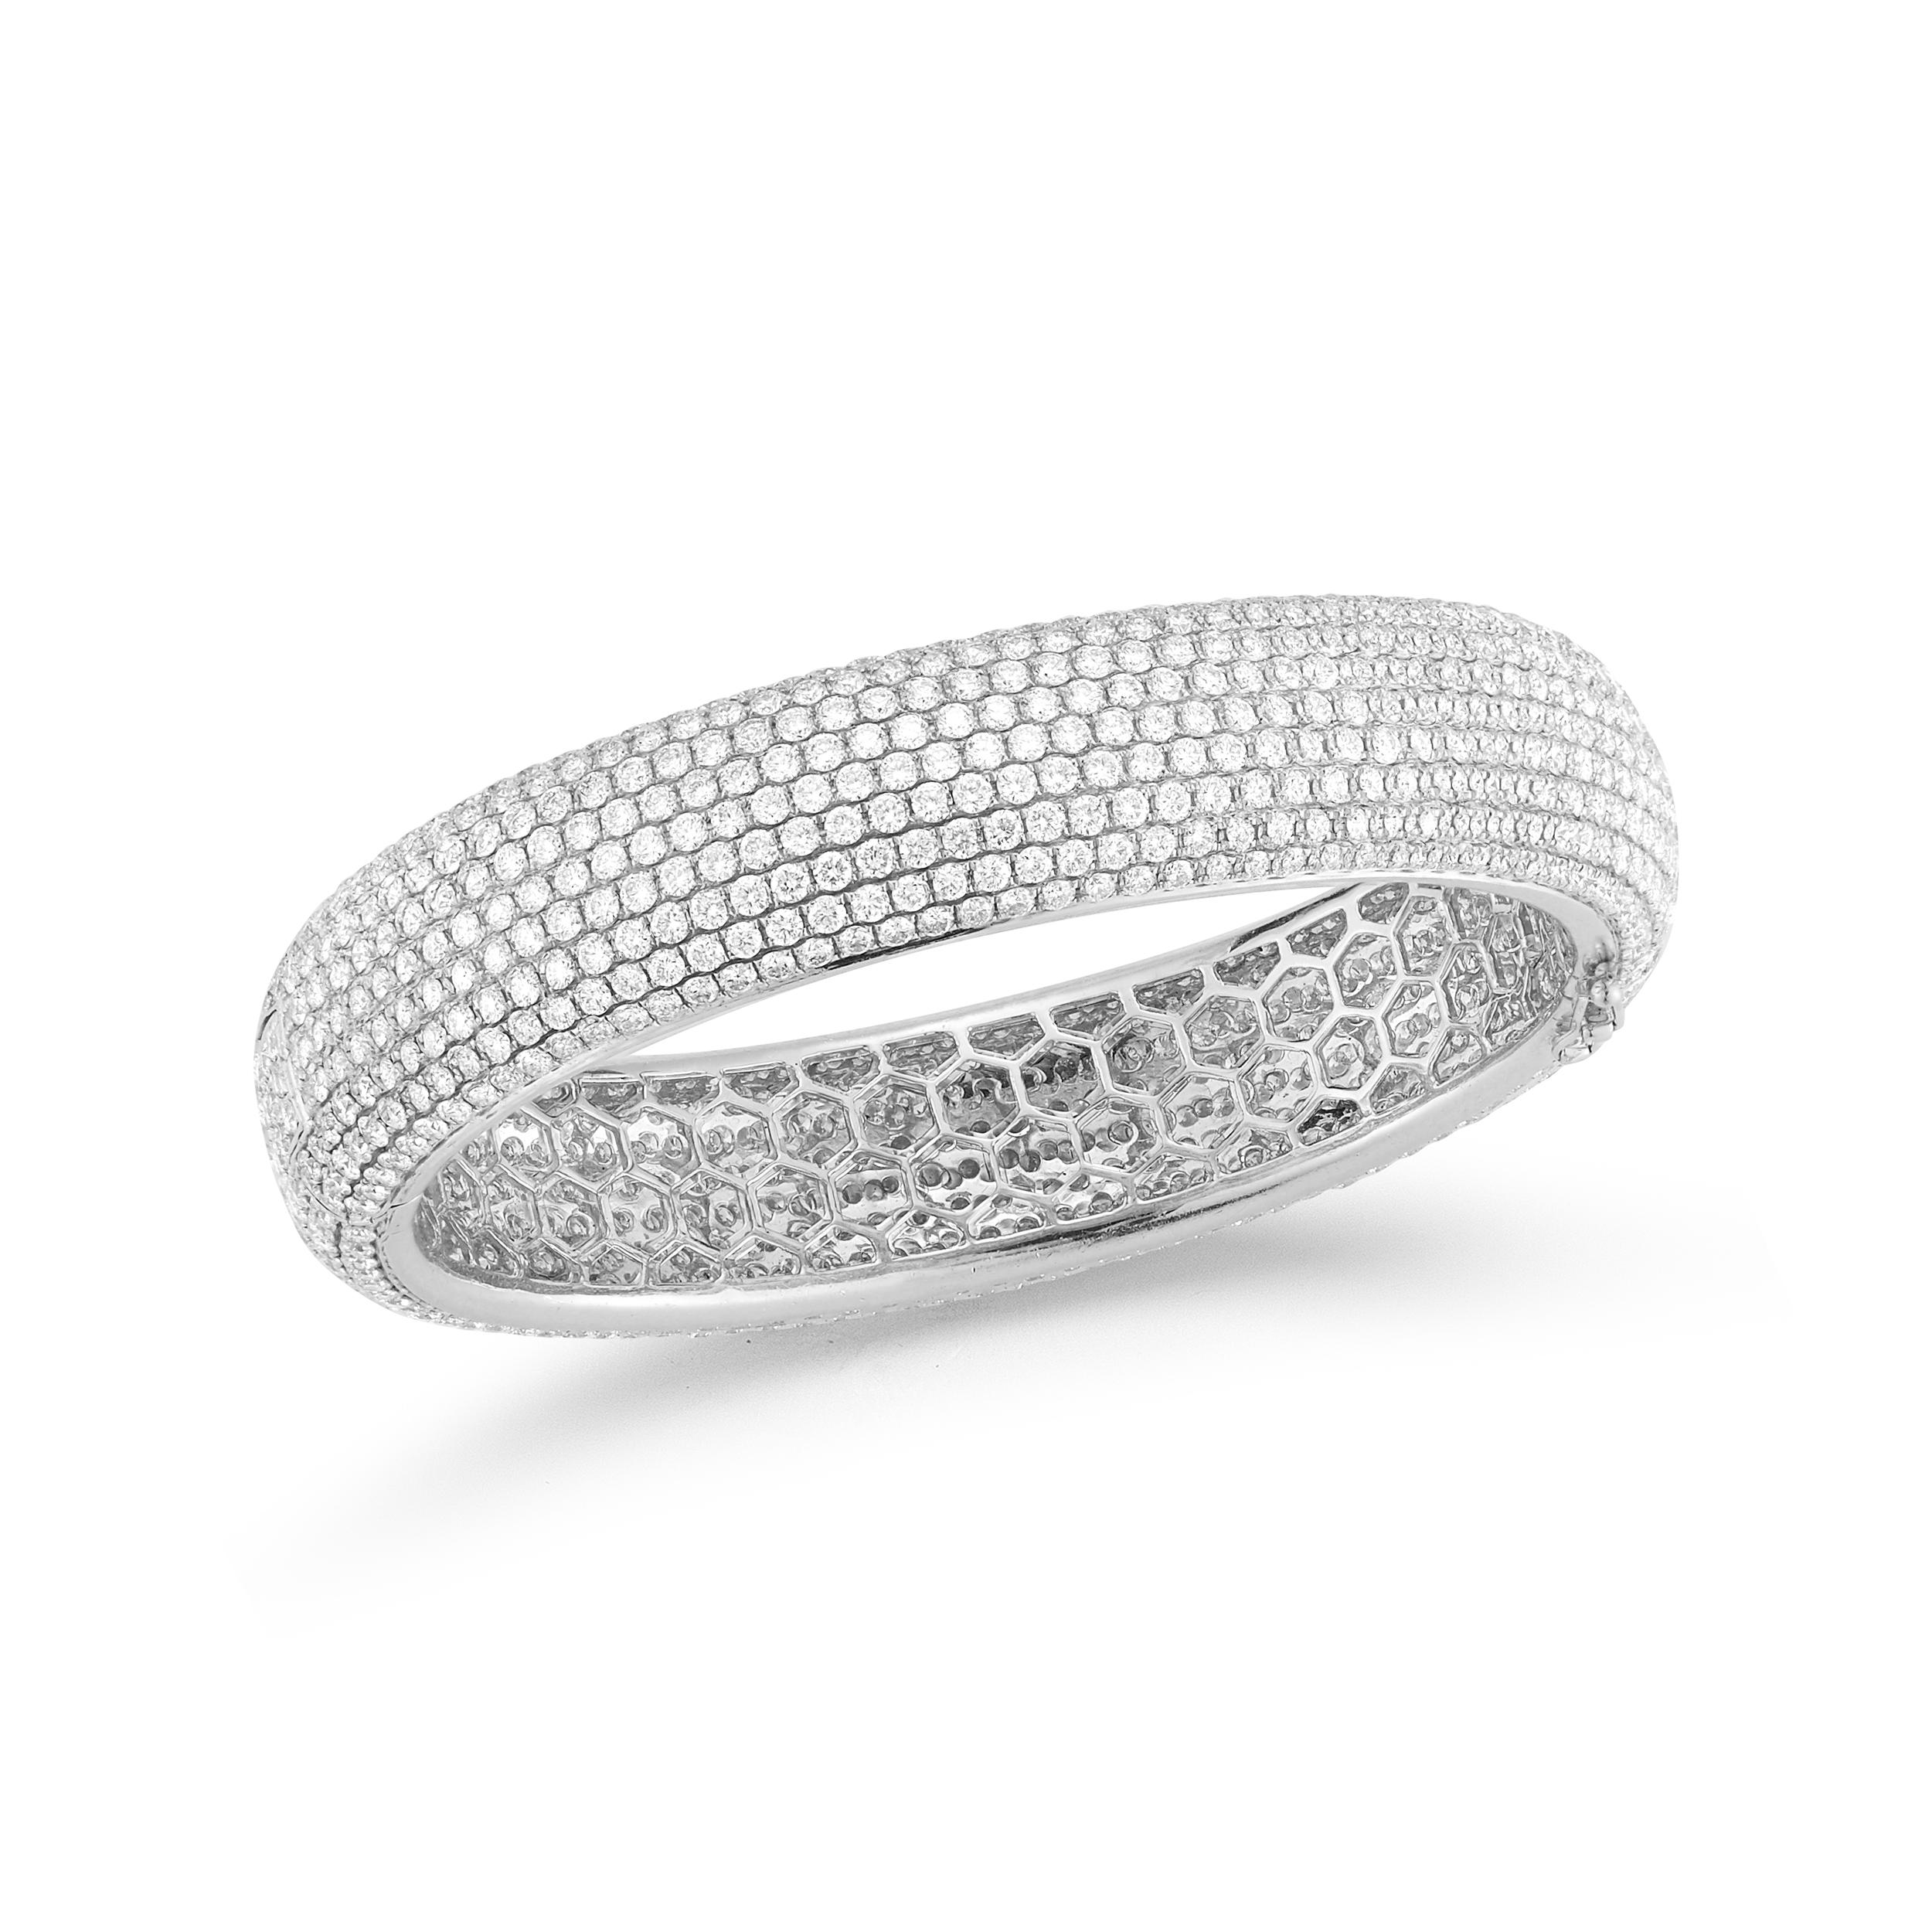 Elegantes Diamantarmband aus 18k Gold weiß oder gelb. Jeder ist mit 23,88 Karat runden Diamanten besetzt, Farbe F/G, Reinheit VS. Kann als stapelbar getragen werden, wie auf dem Bild gezeigt.